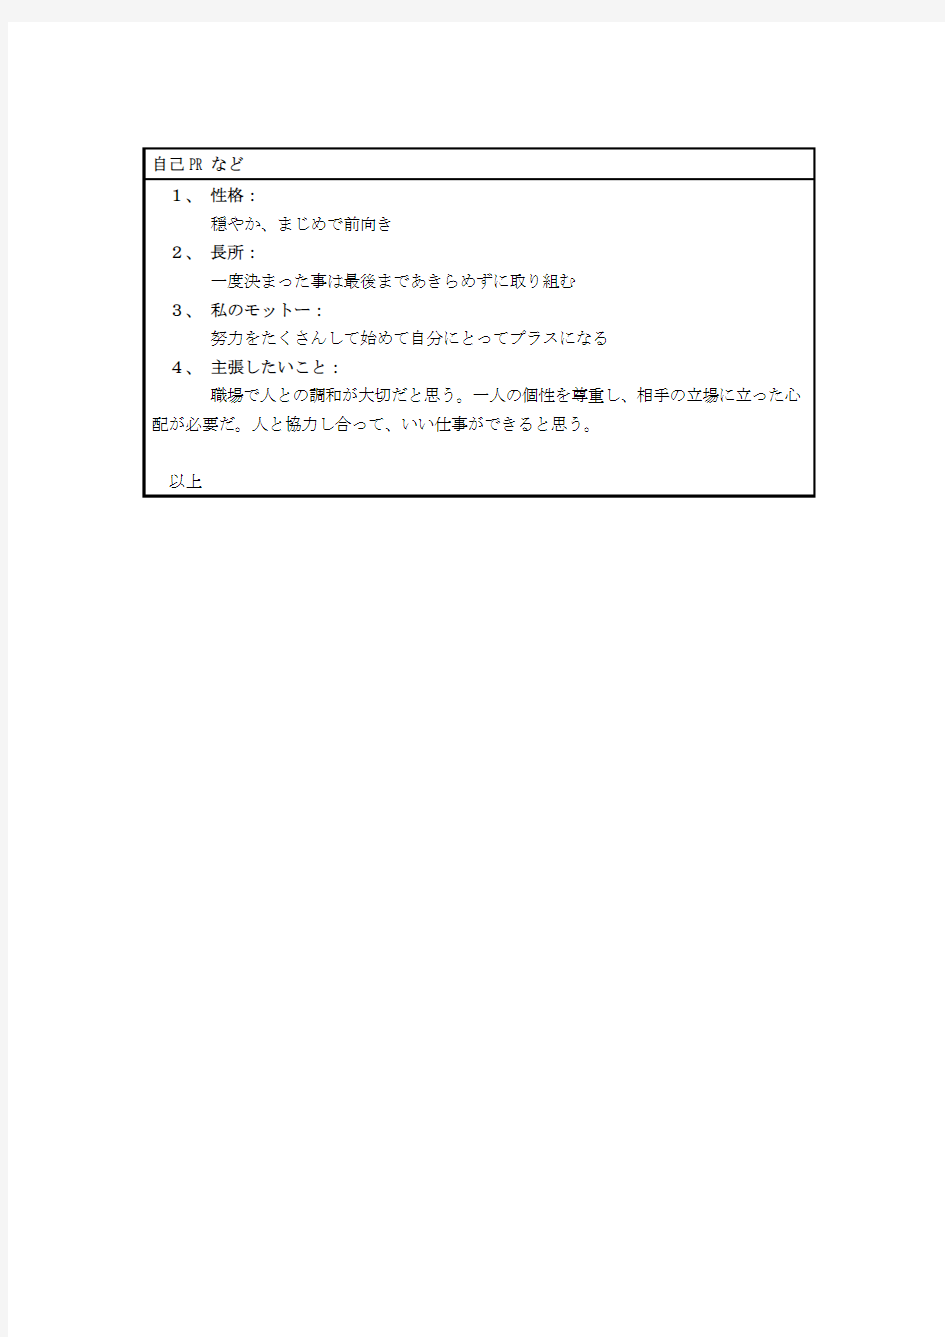 【求职简历】日本语面接履歴书-日语简历模板-